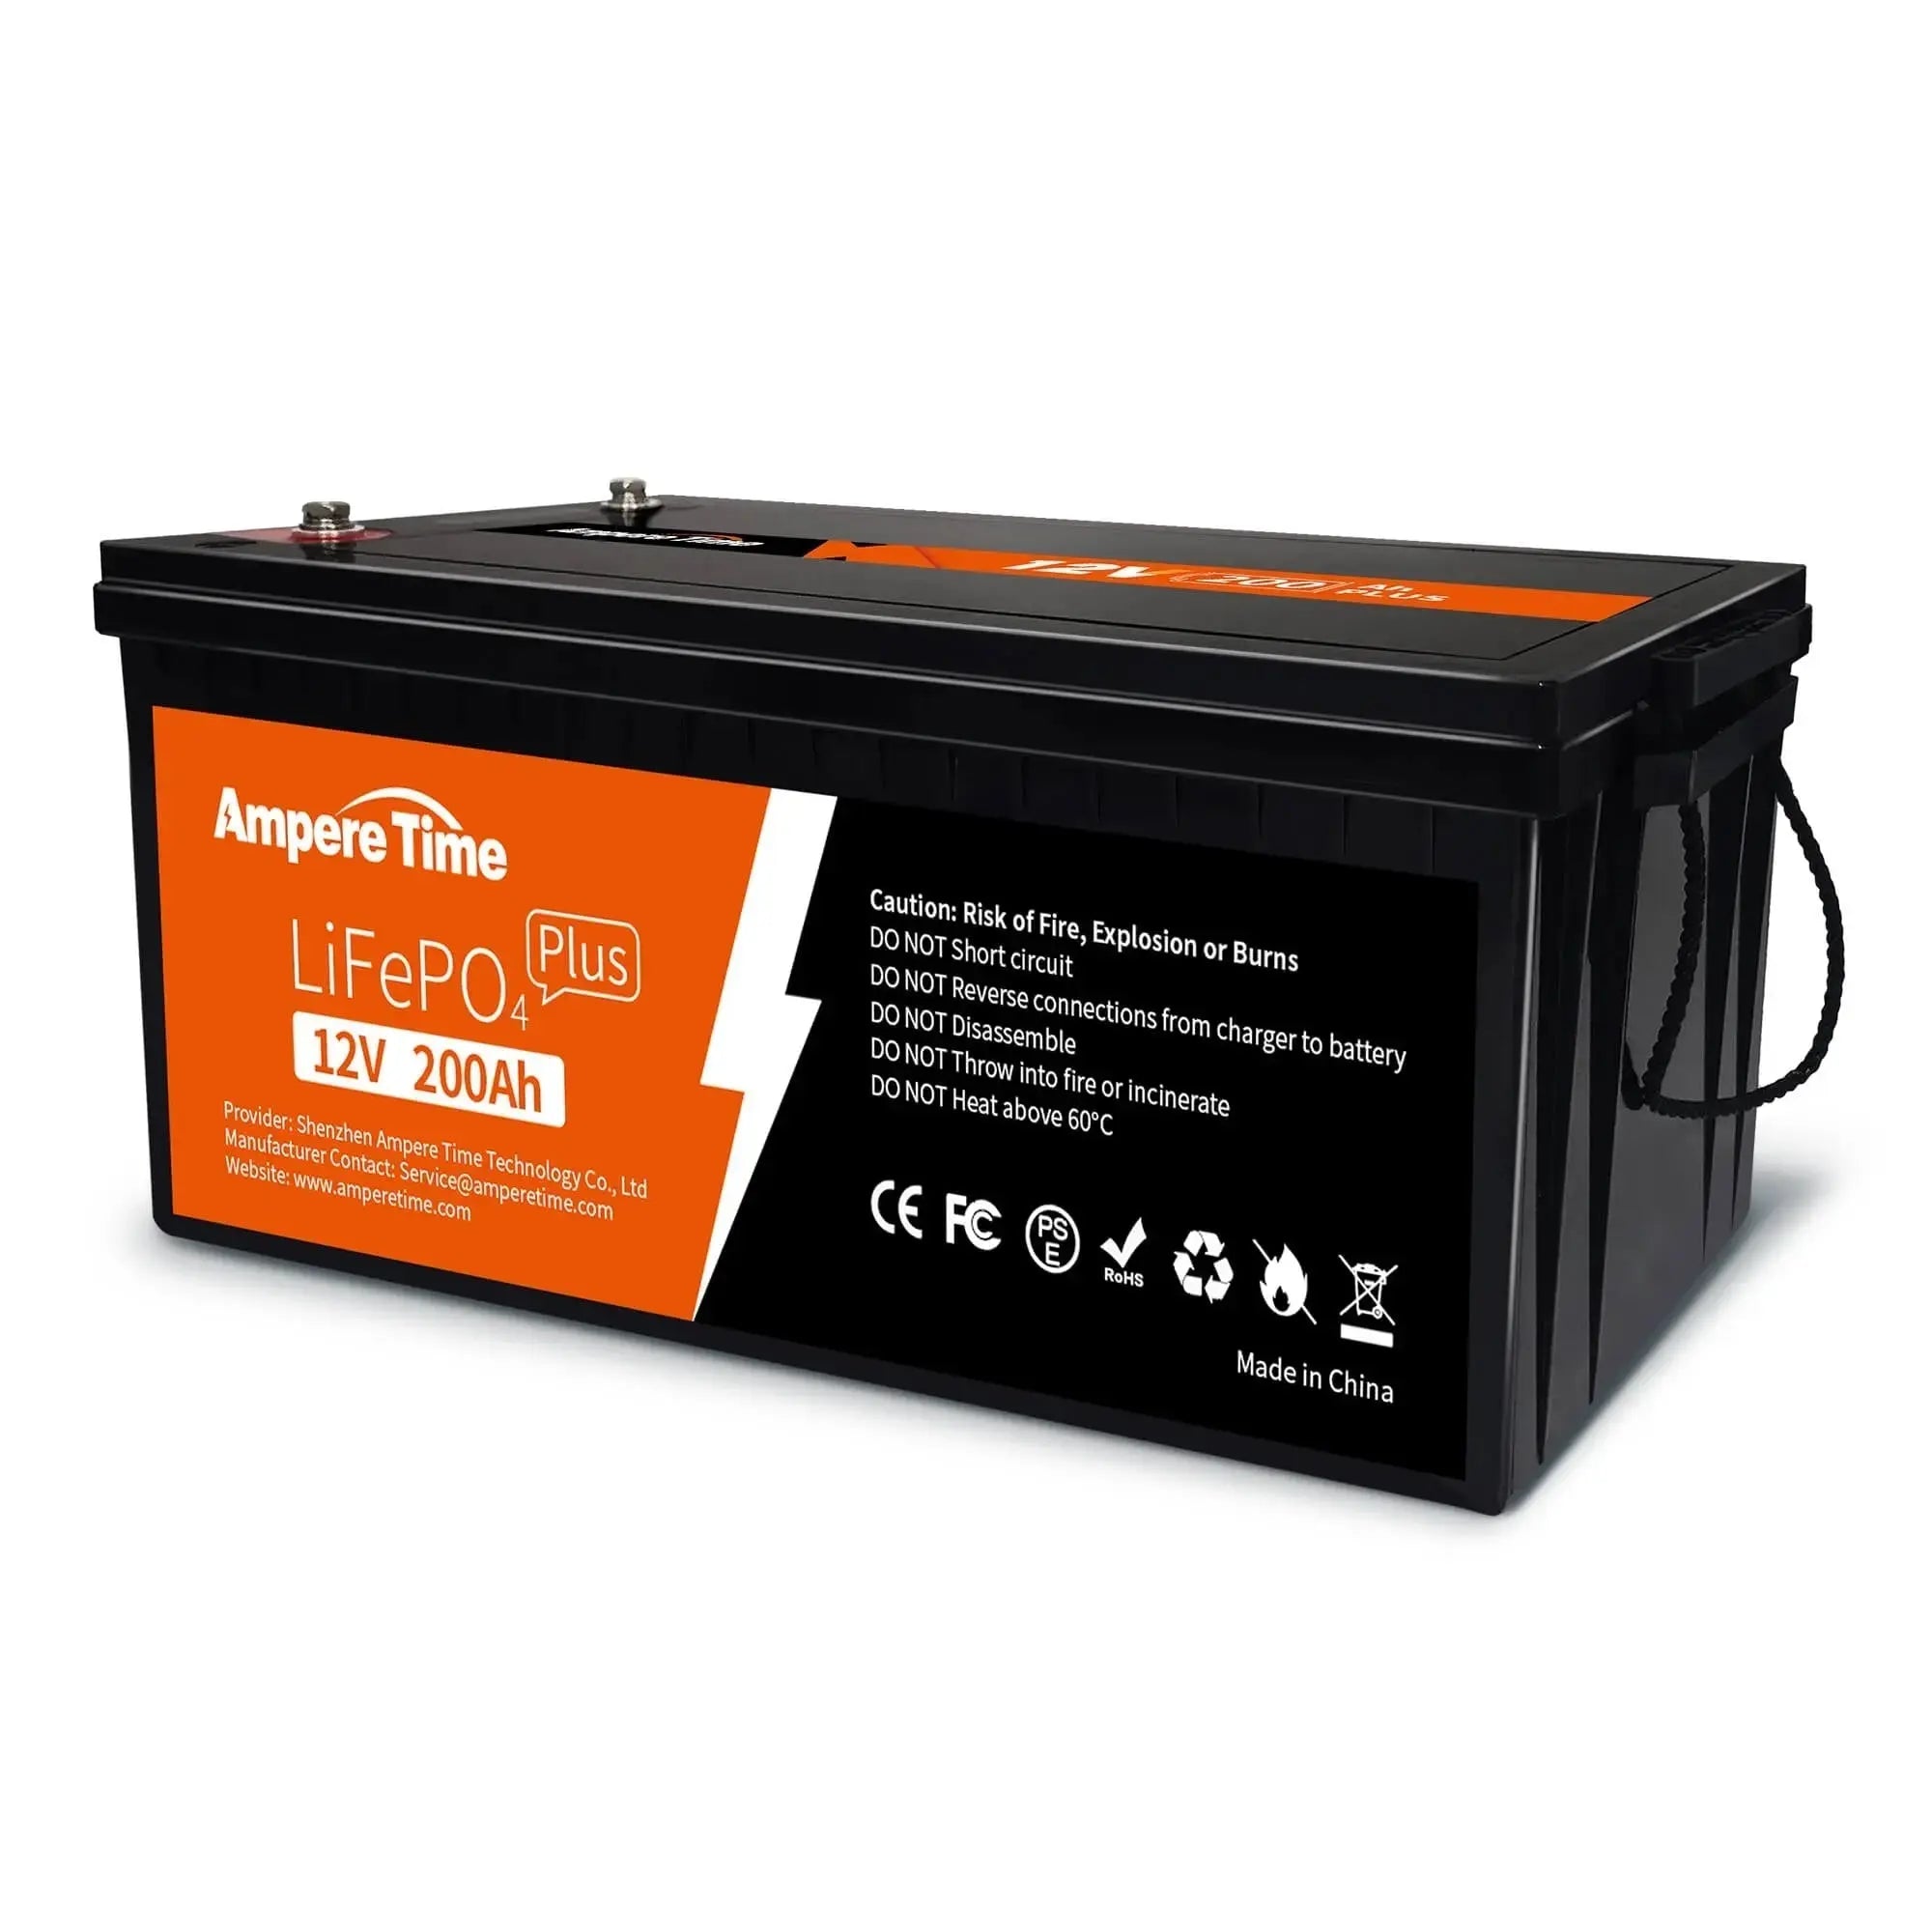 LiTime 12V 200Ah LiFePO4 Lithium Batterie – LiTime-DE